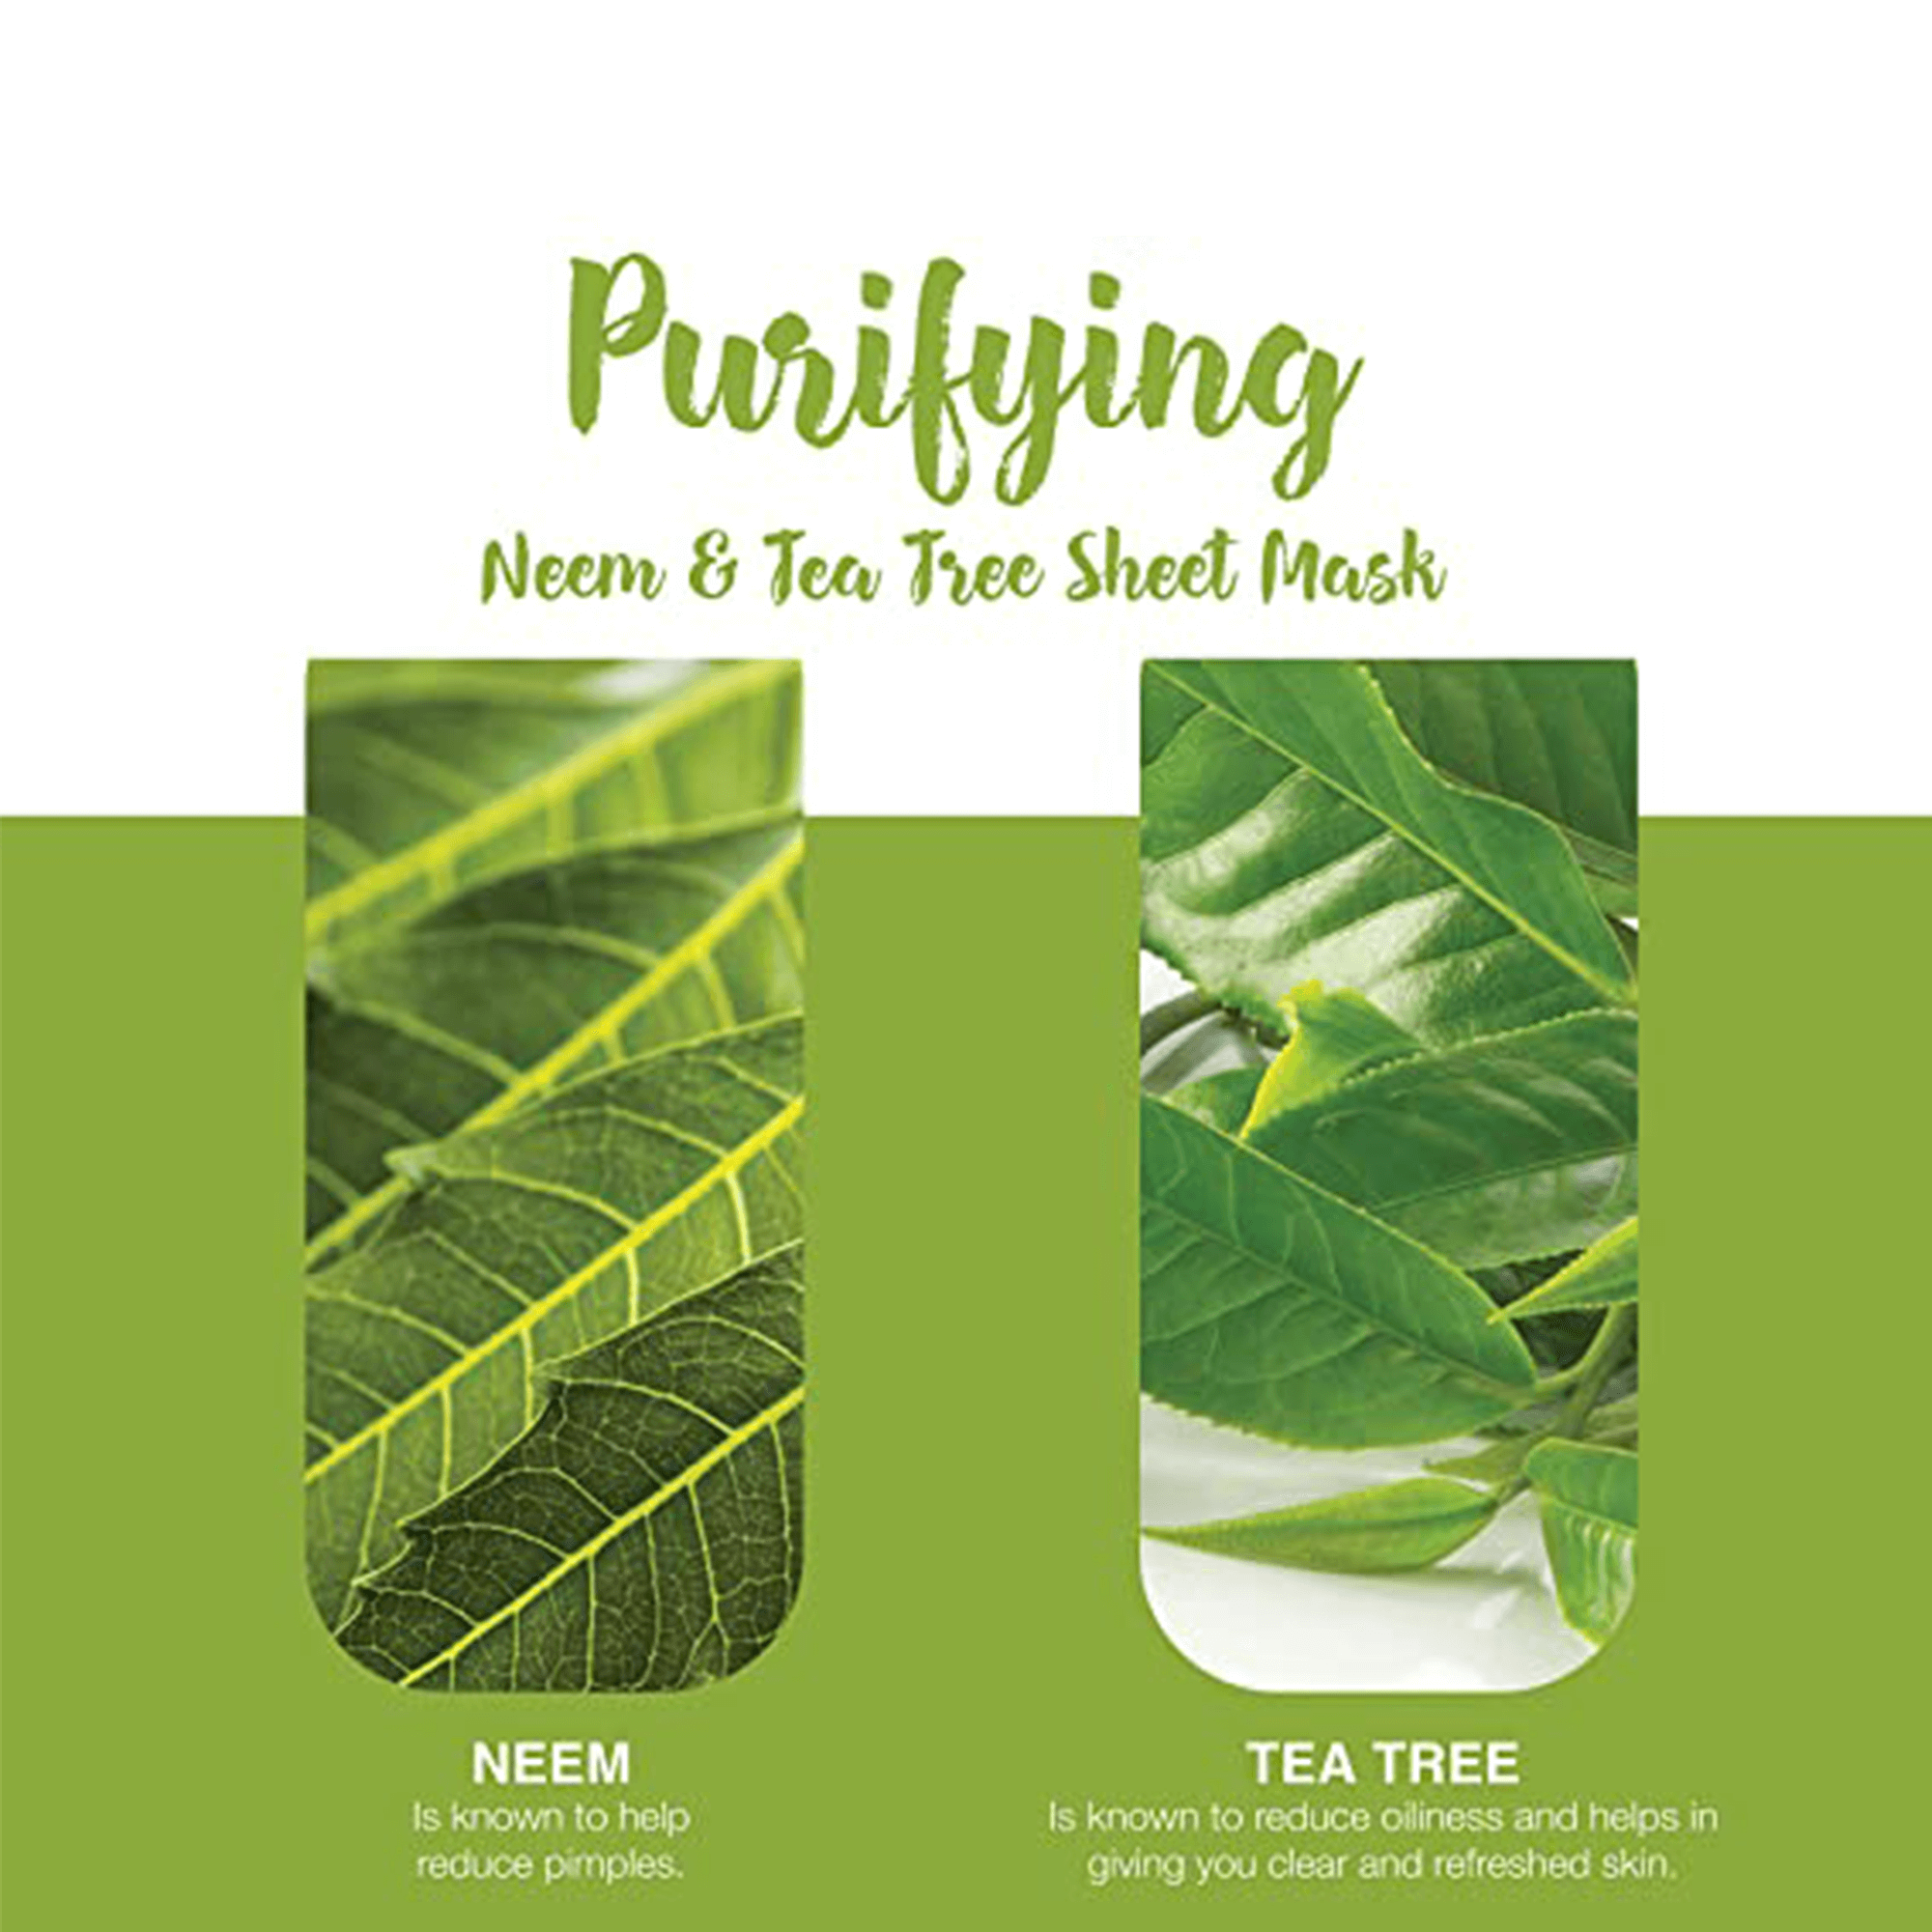 Purifying Neem & Tea Tree Sheet Mask Key Ingredients